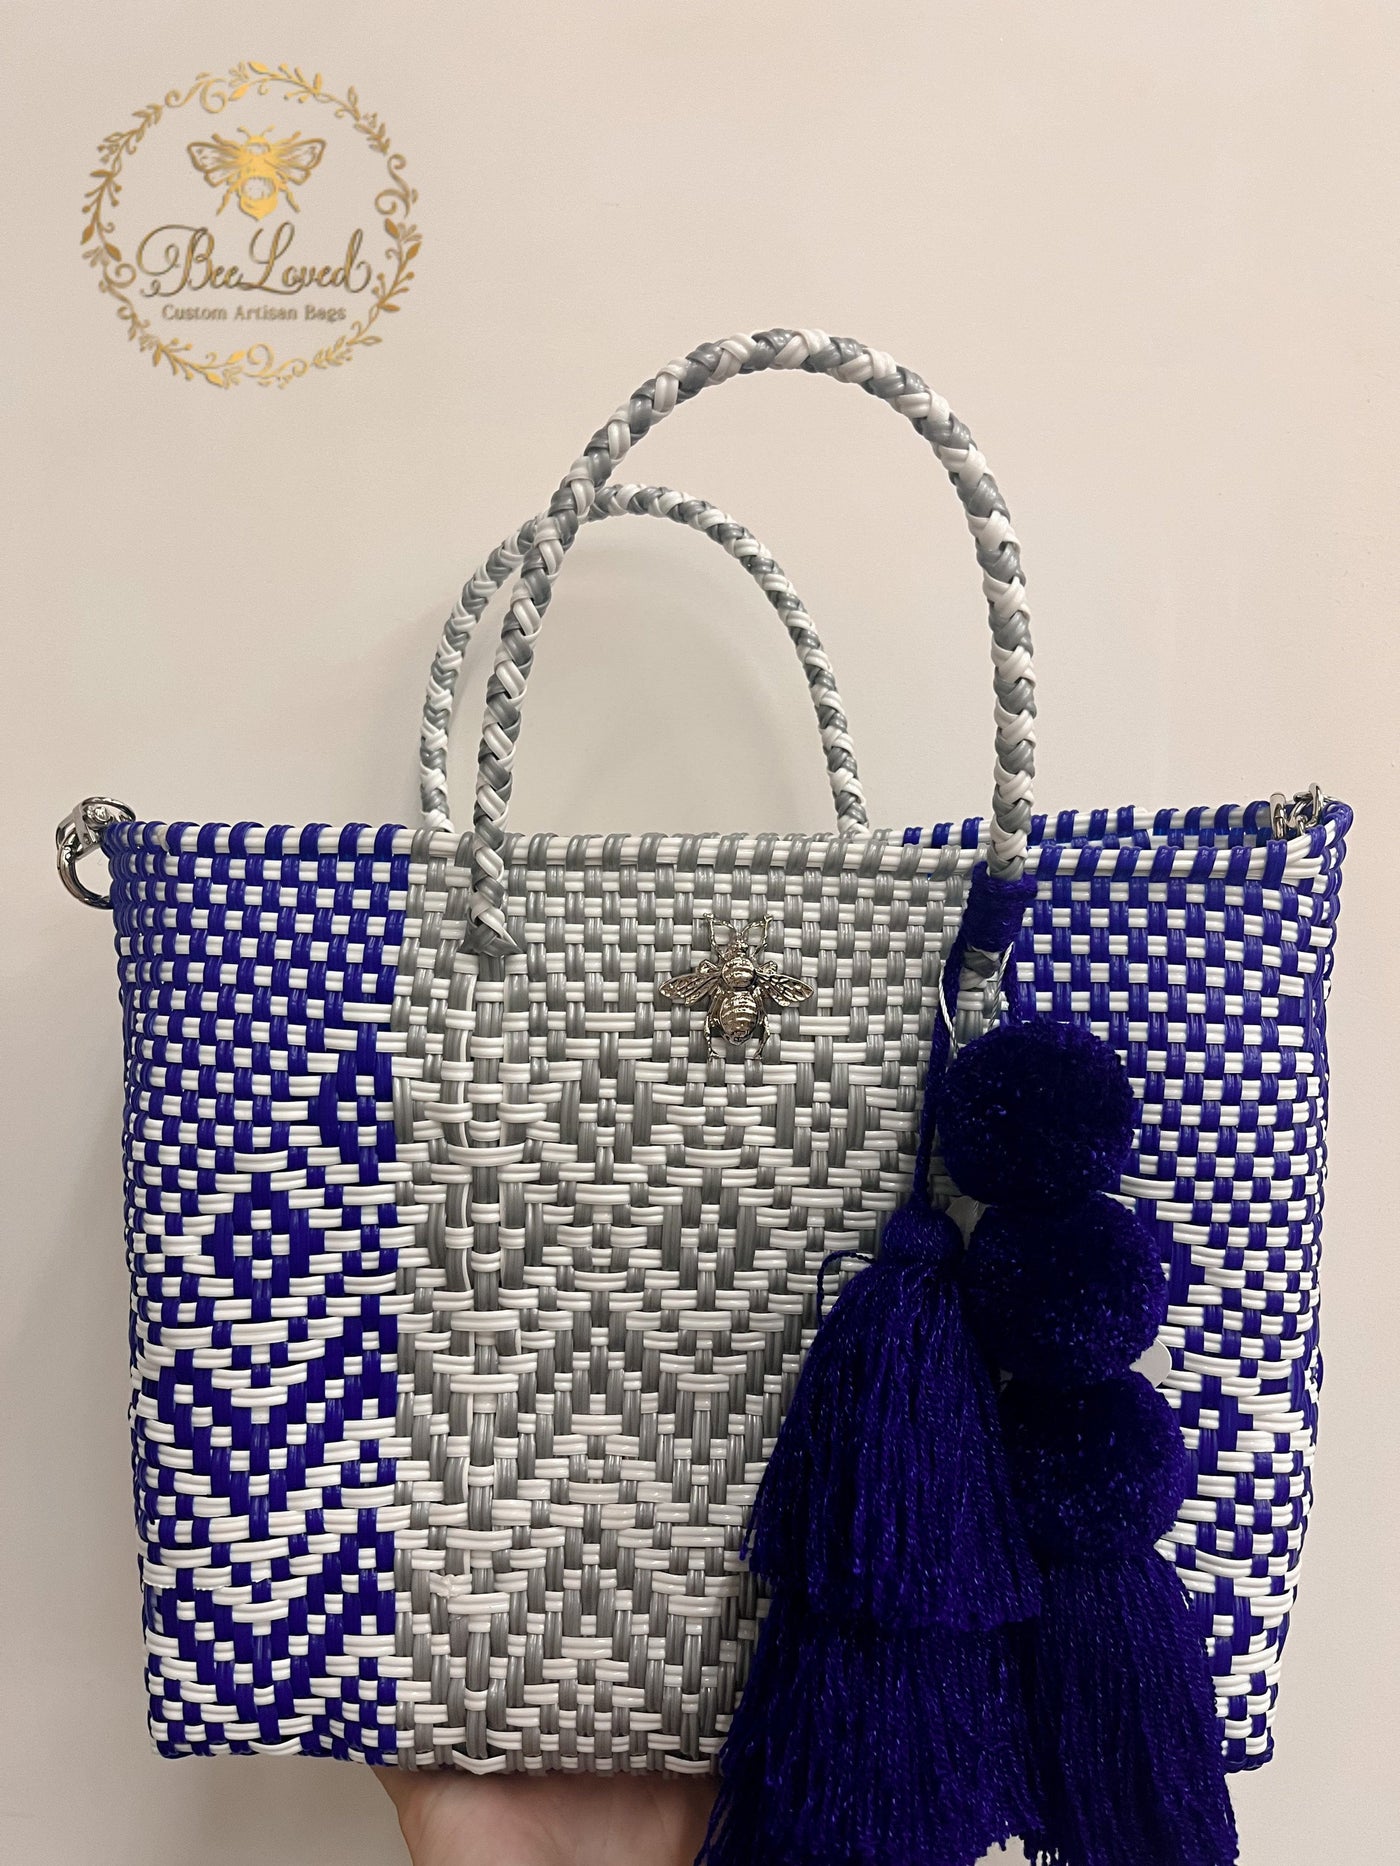 BeeLoved Custom Artisan Bags and Gifts Handbags Small Darter Beech Bag